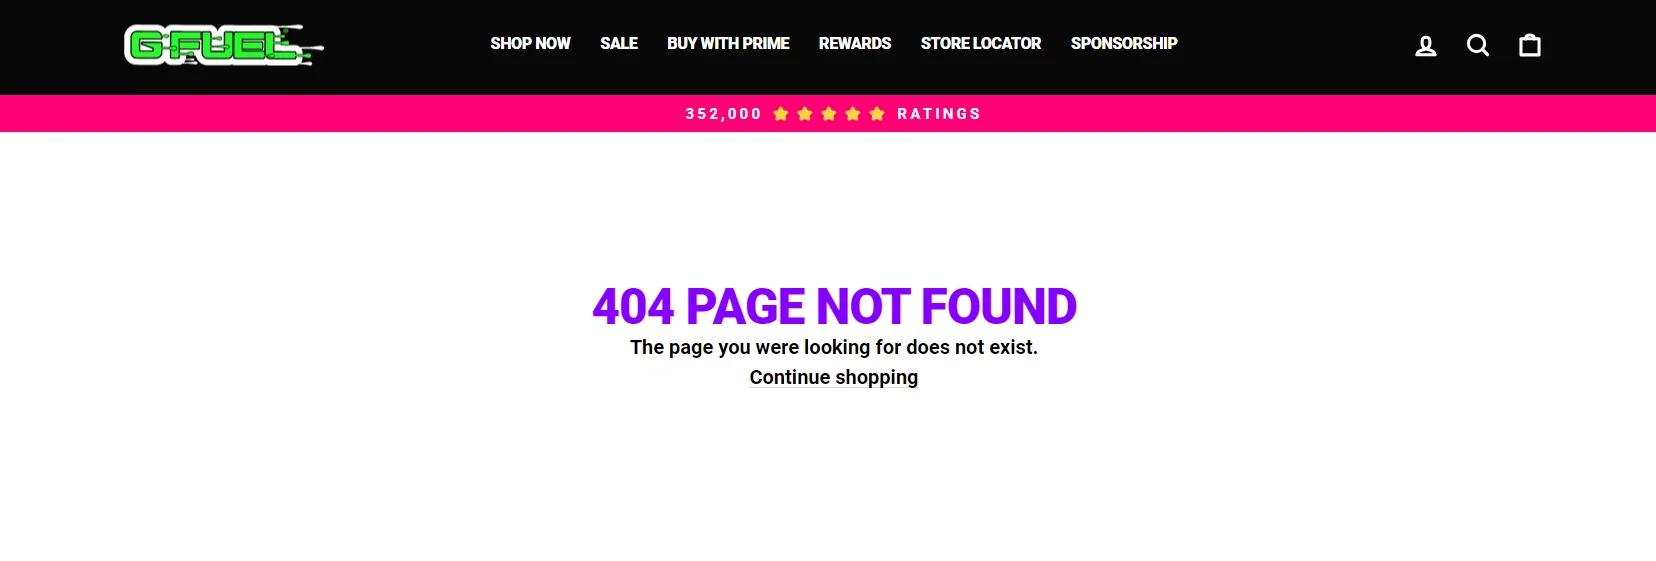 Uma mensagem de erro no site da G-Fuel dizia “404 PÁGINA NÃO ENCONTRADA A página que você estava procurando não existe”.